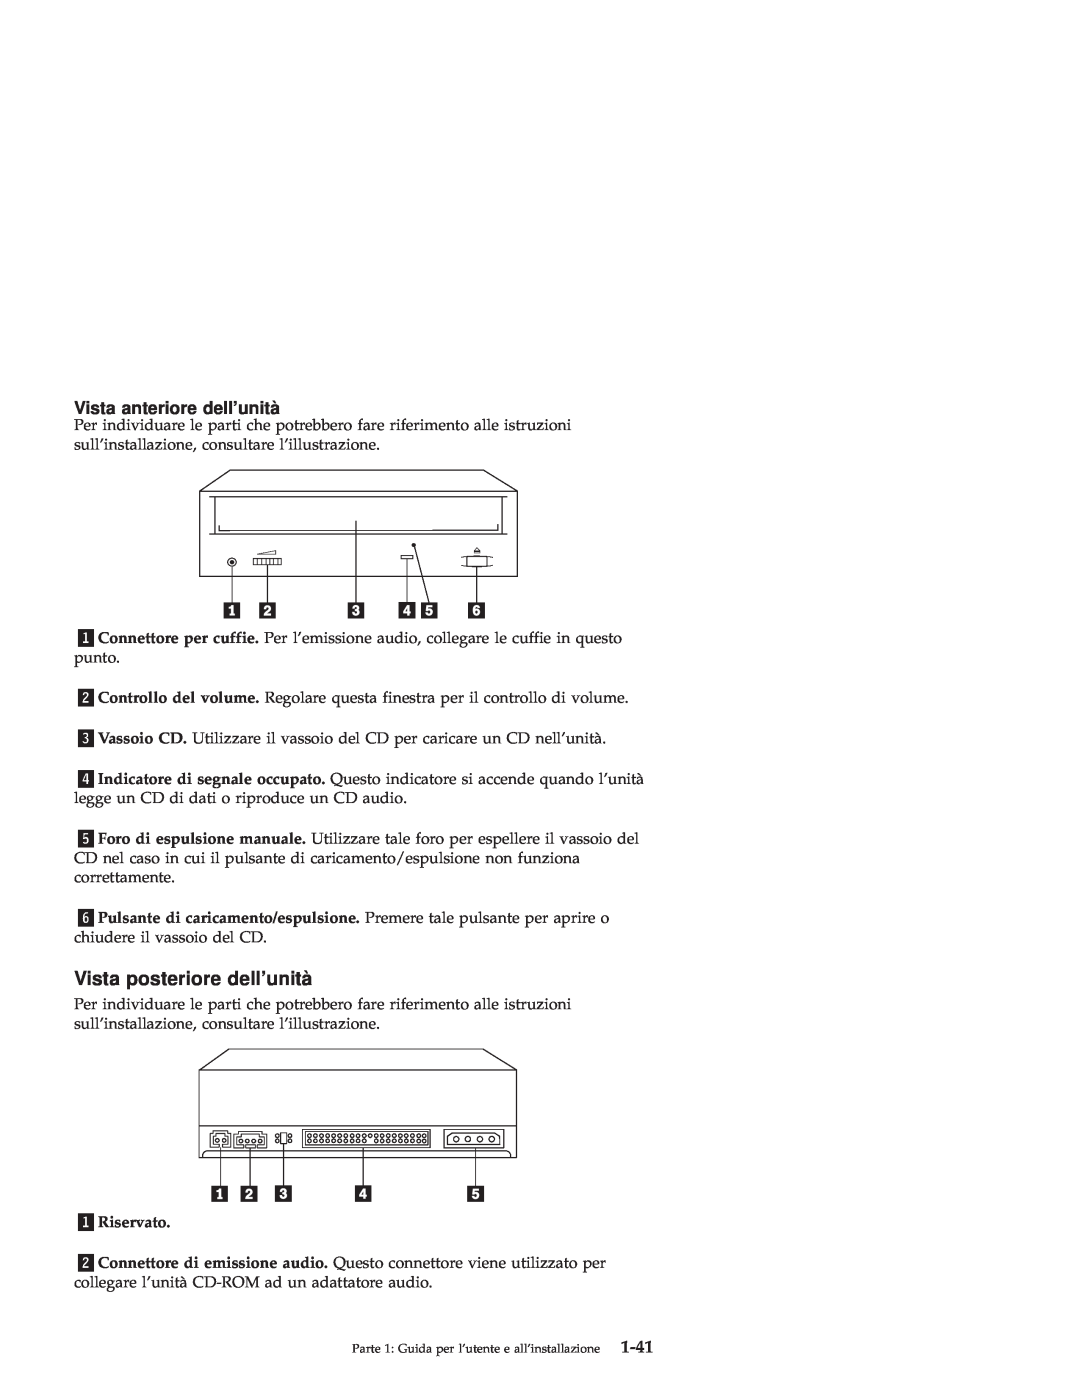 IBM 71P7279 manual Vista posteriore dellunità, Vista anteriore dellunità, 1-41, «1¬Riservato 